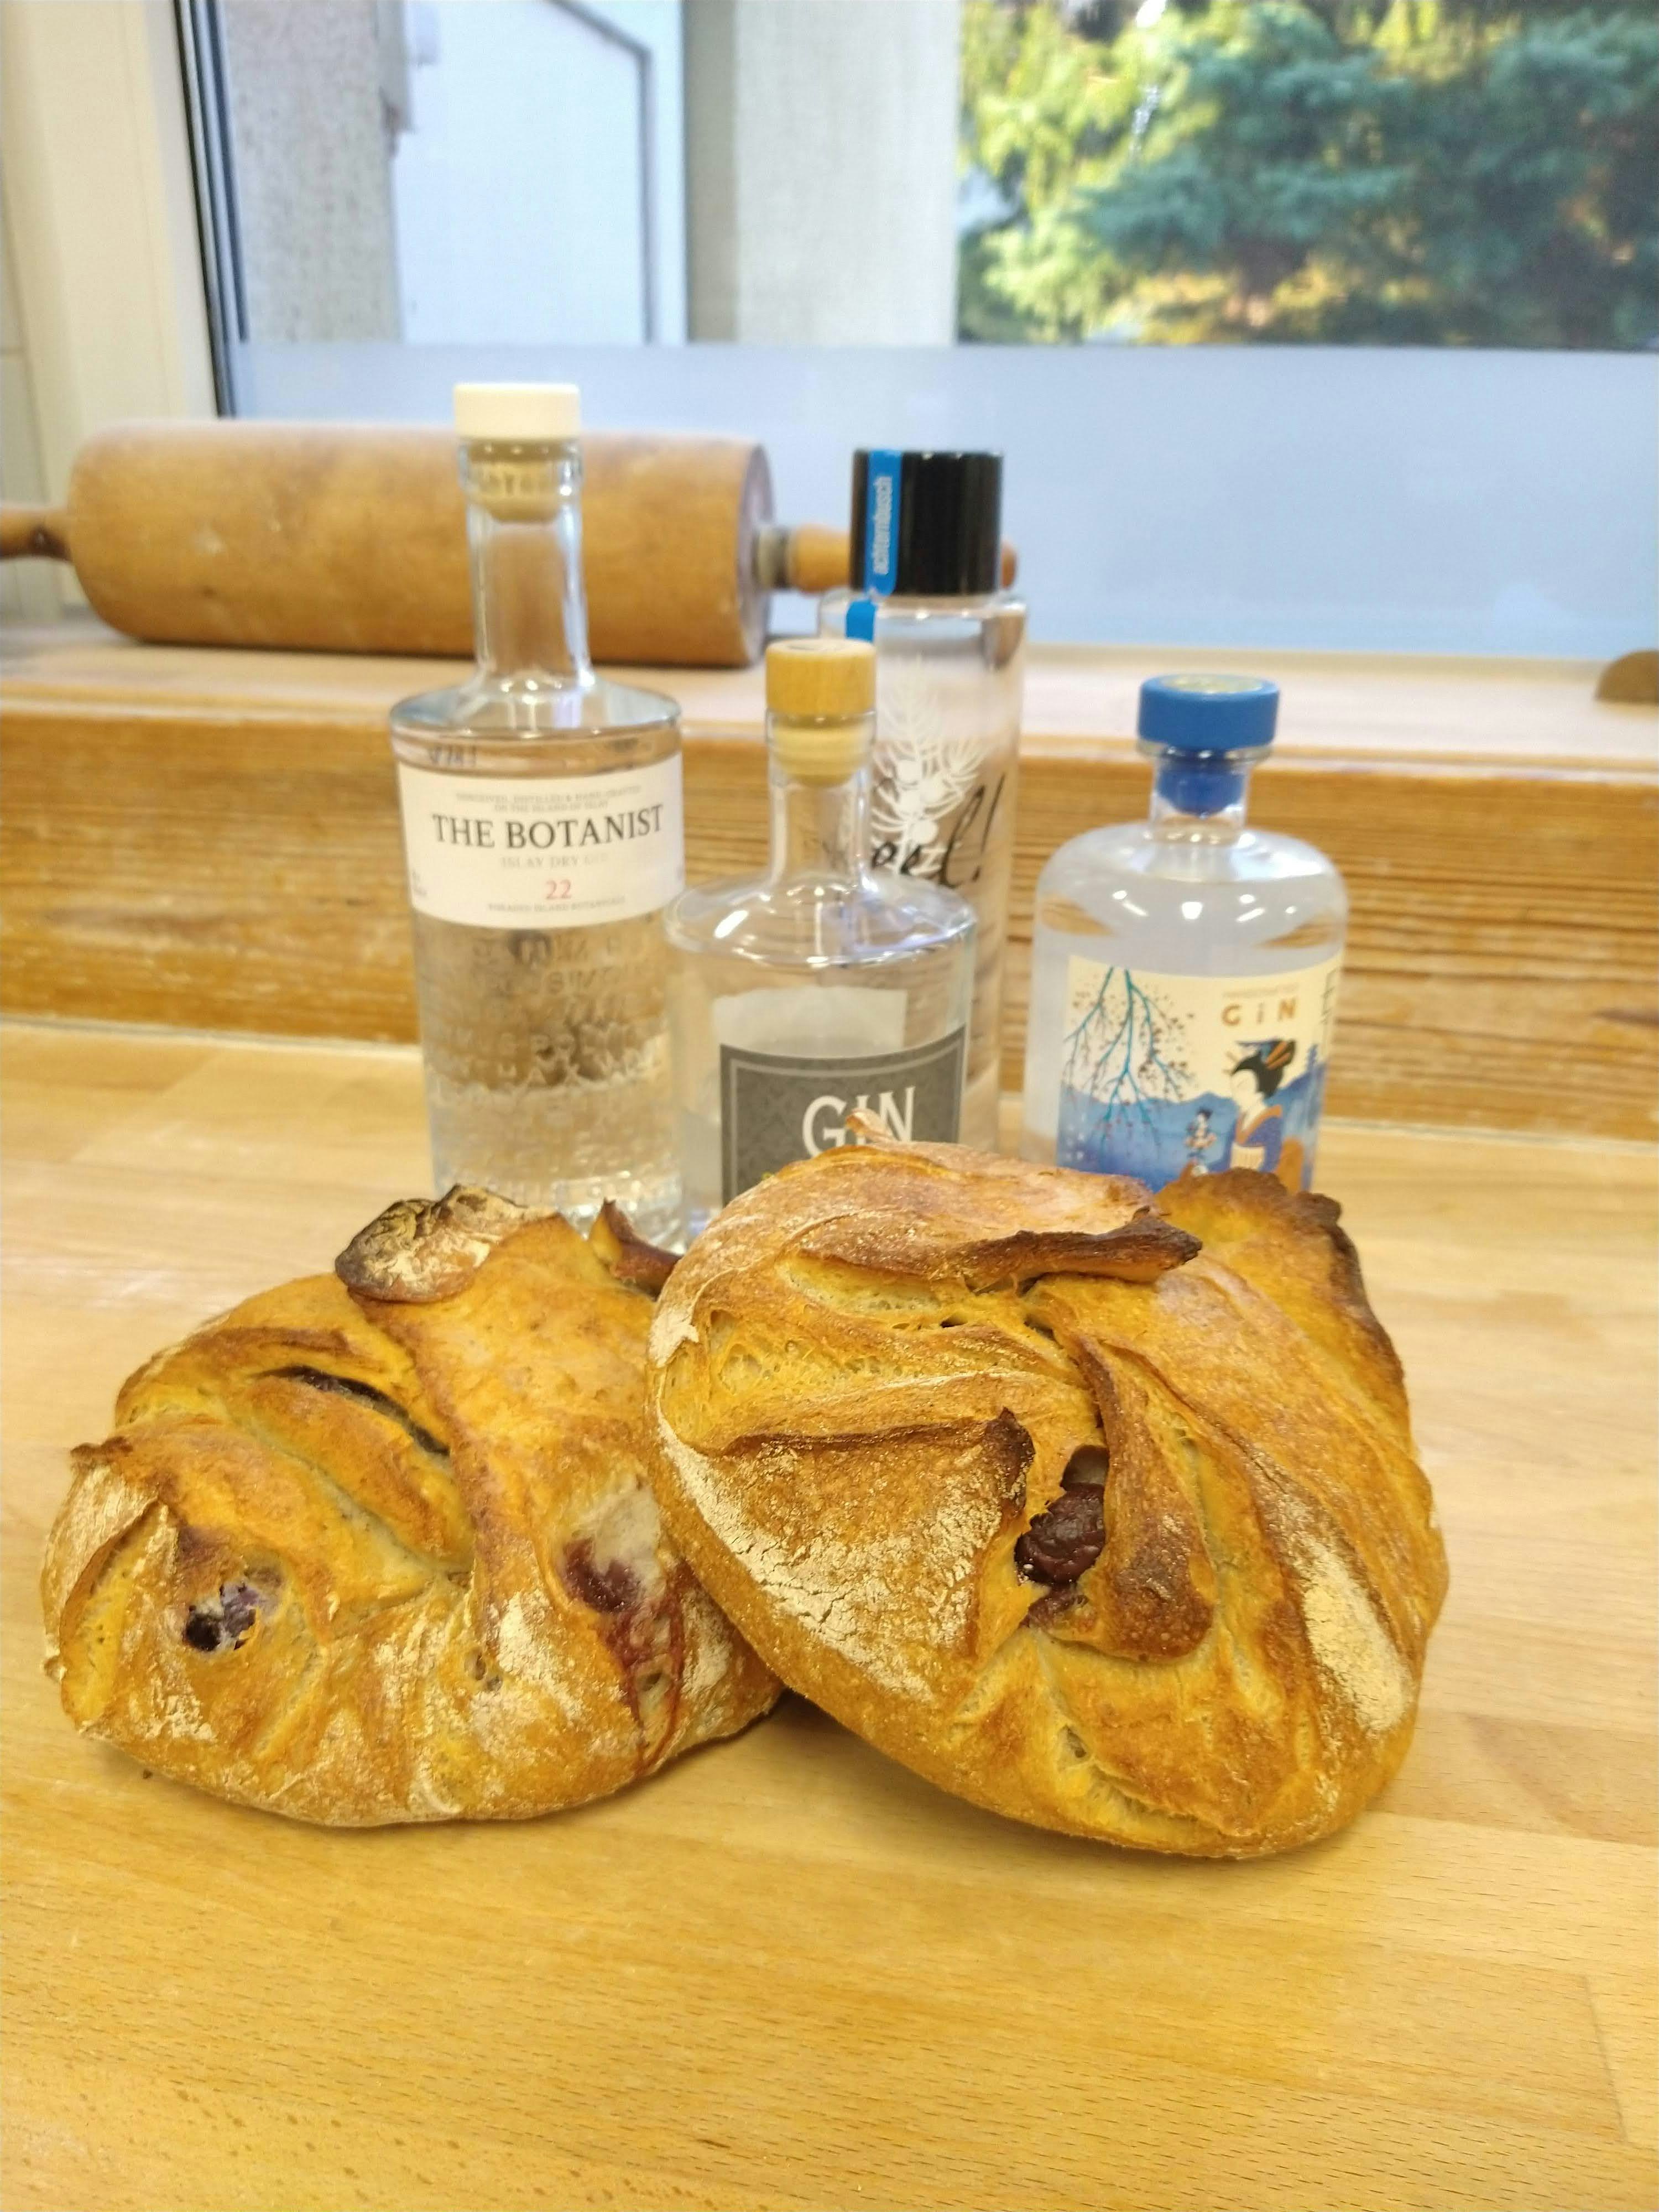 Genieße mit uns gemeinsam einen Abend mit Brot & Gin in unserer Backstube. Martin von Ponickau wird uns in die Welt des Gin entführen